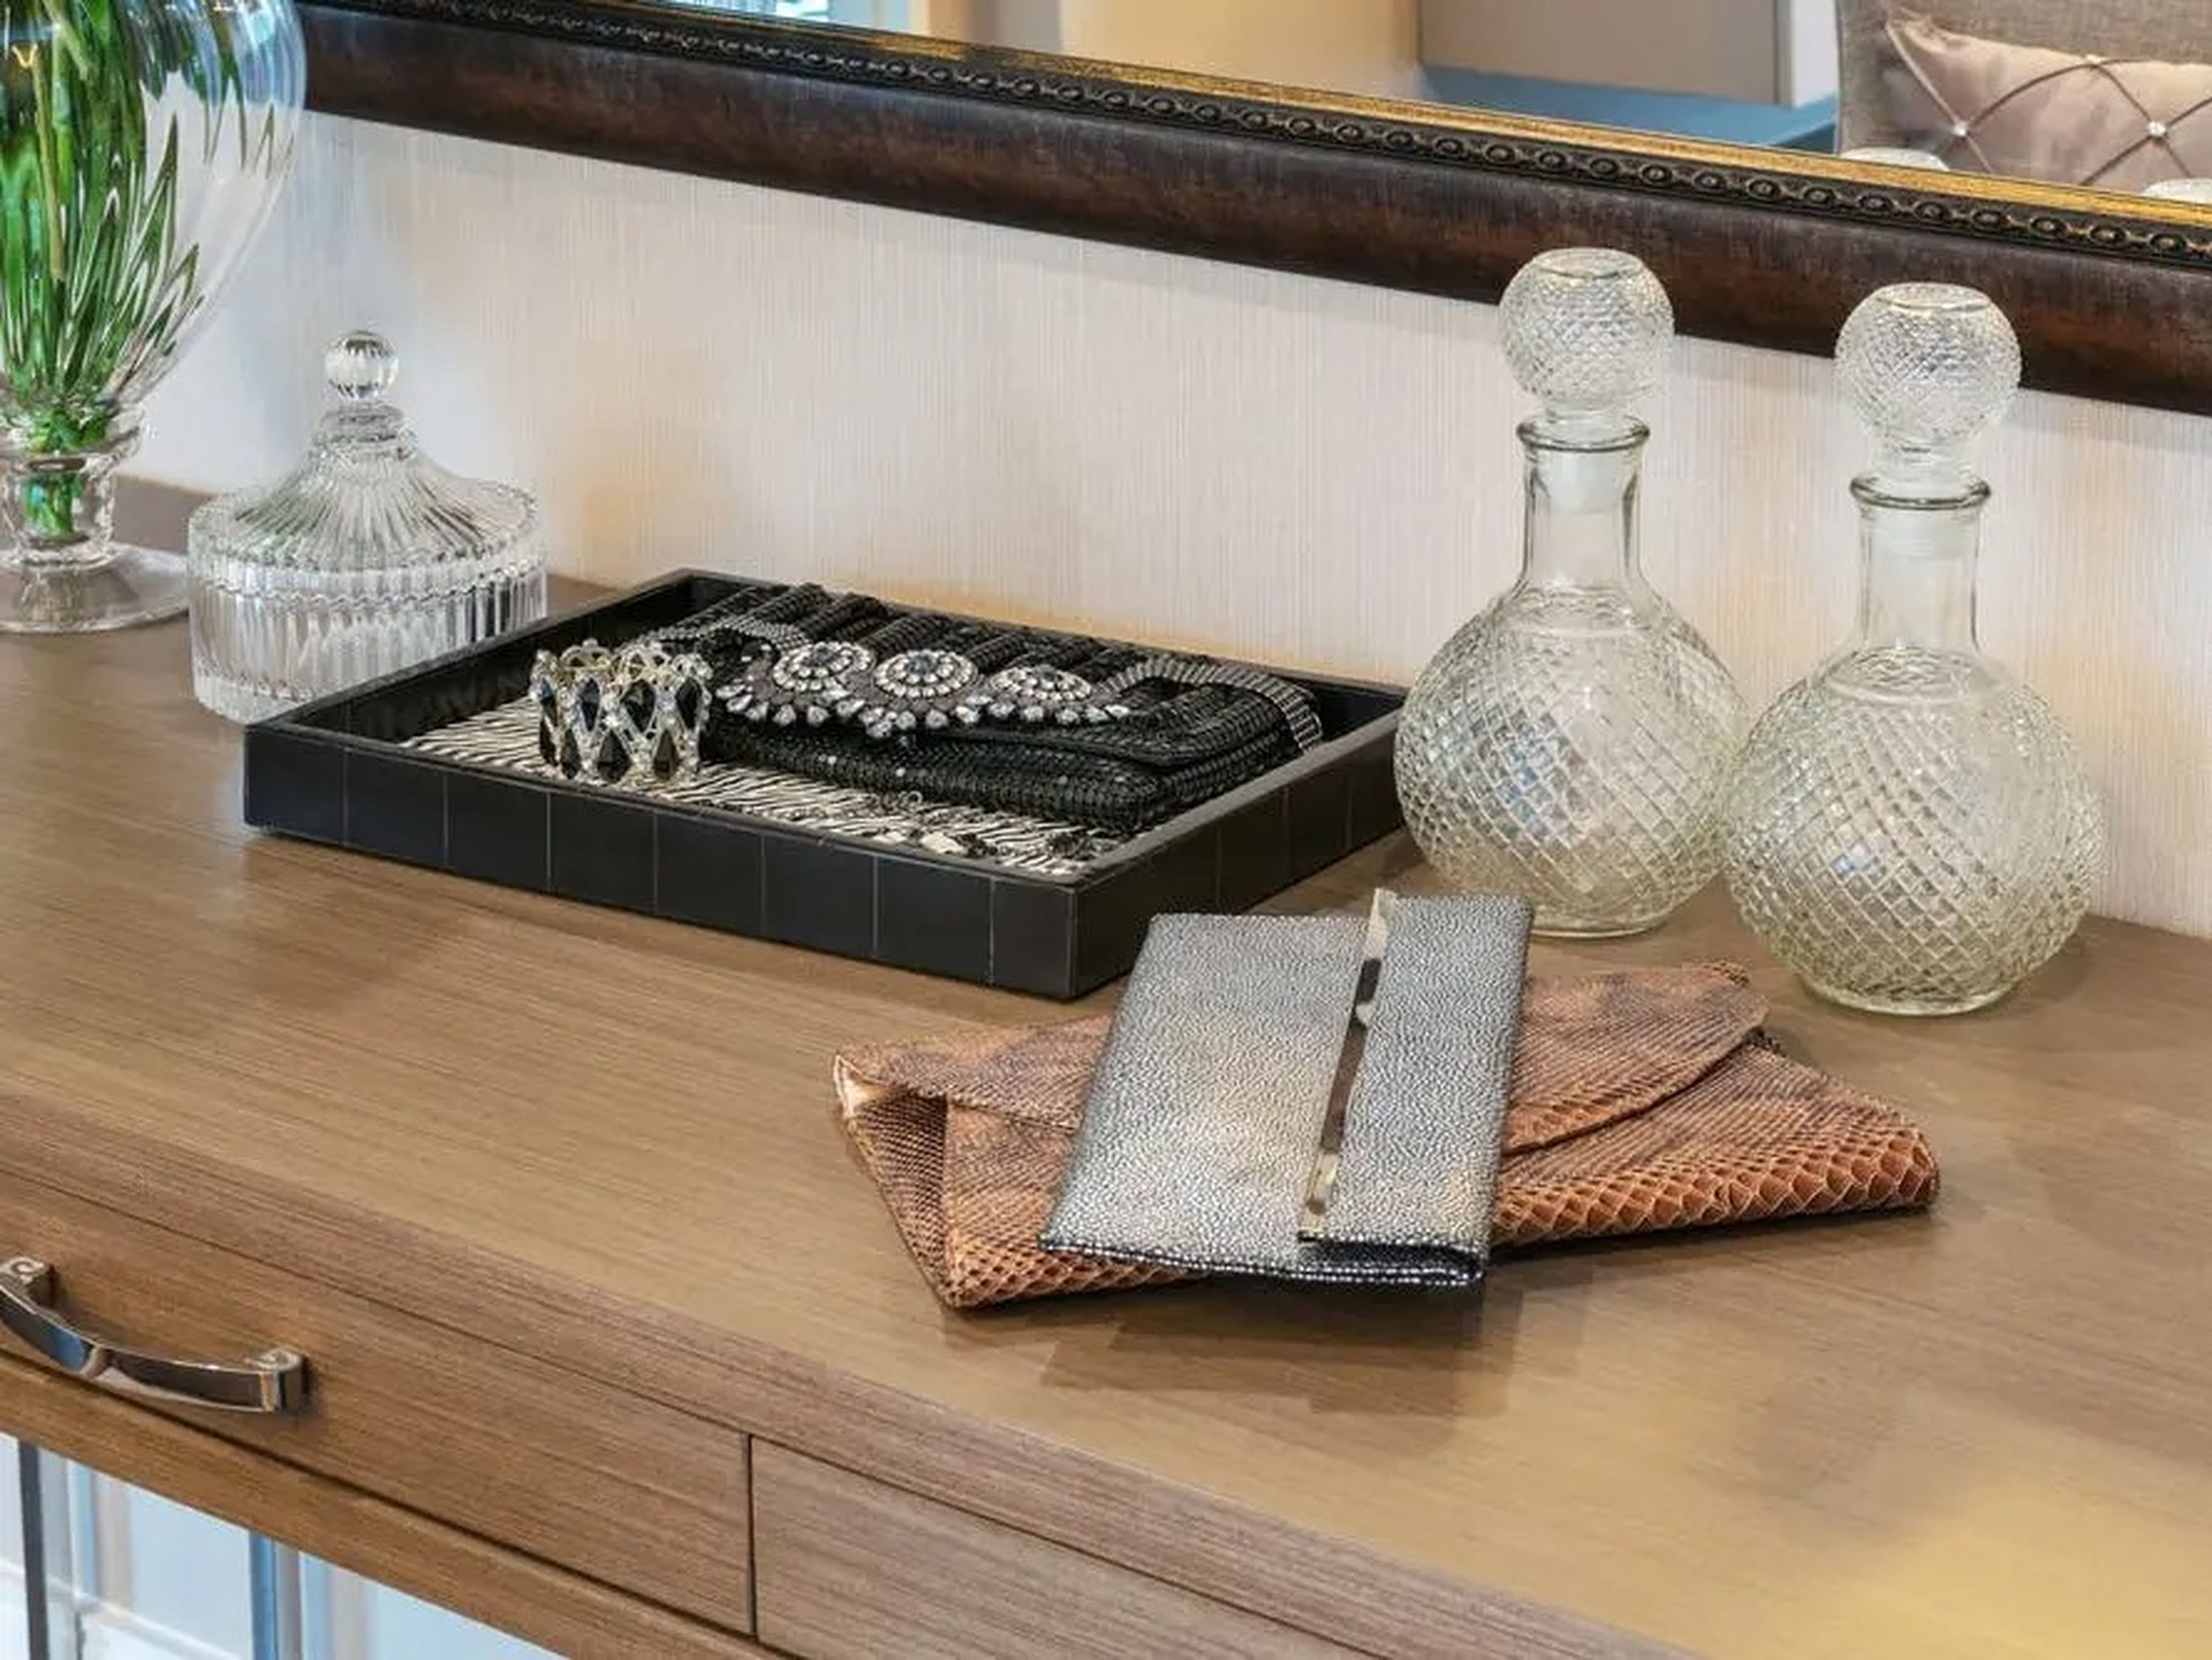 Joyas y bolsos de mano sobre una cómoda de madera.